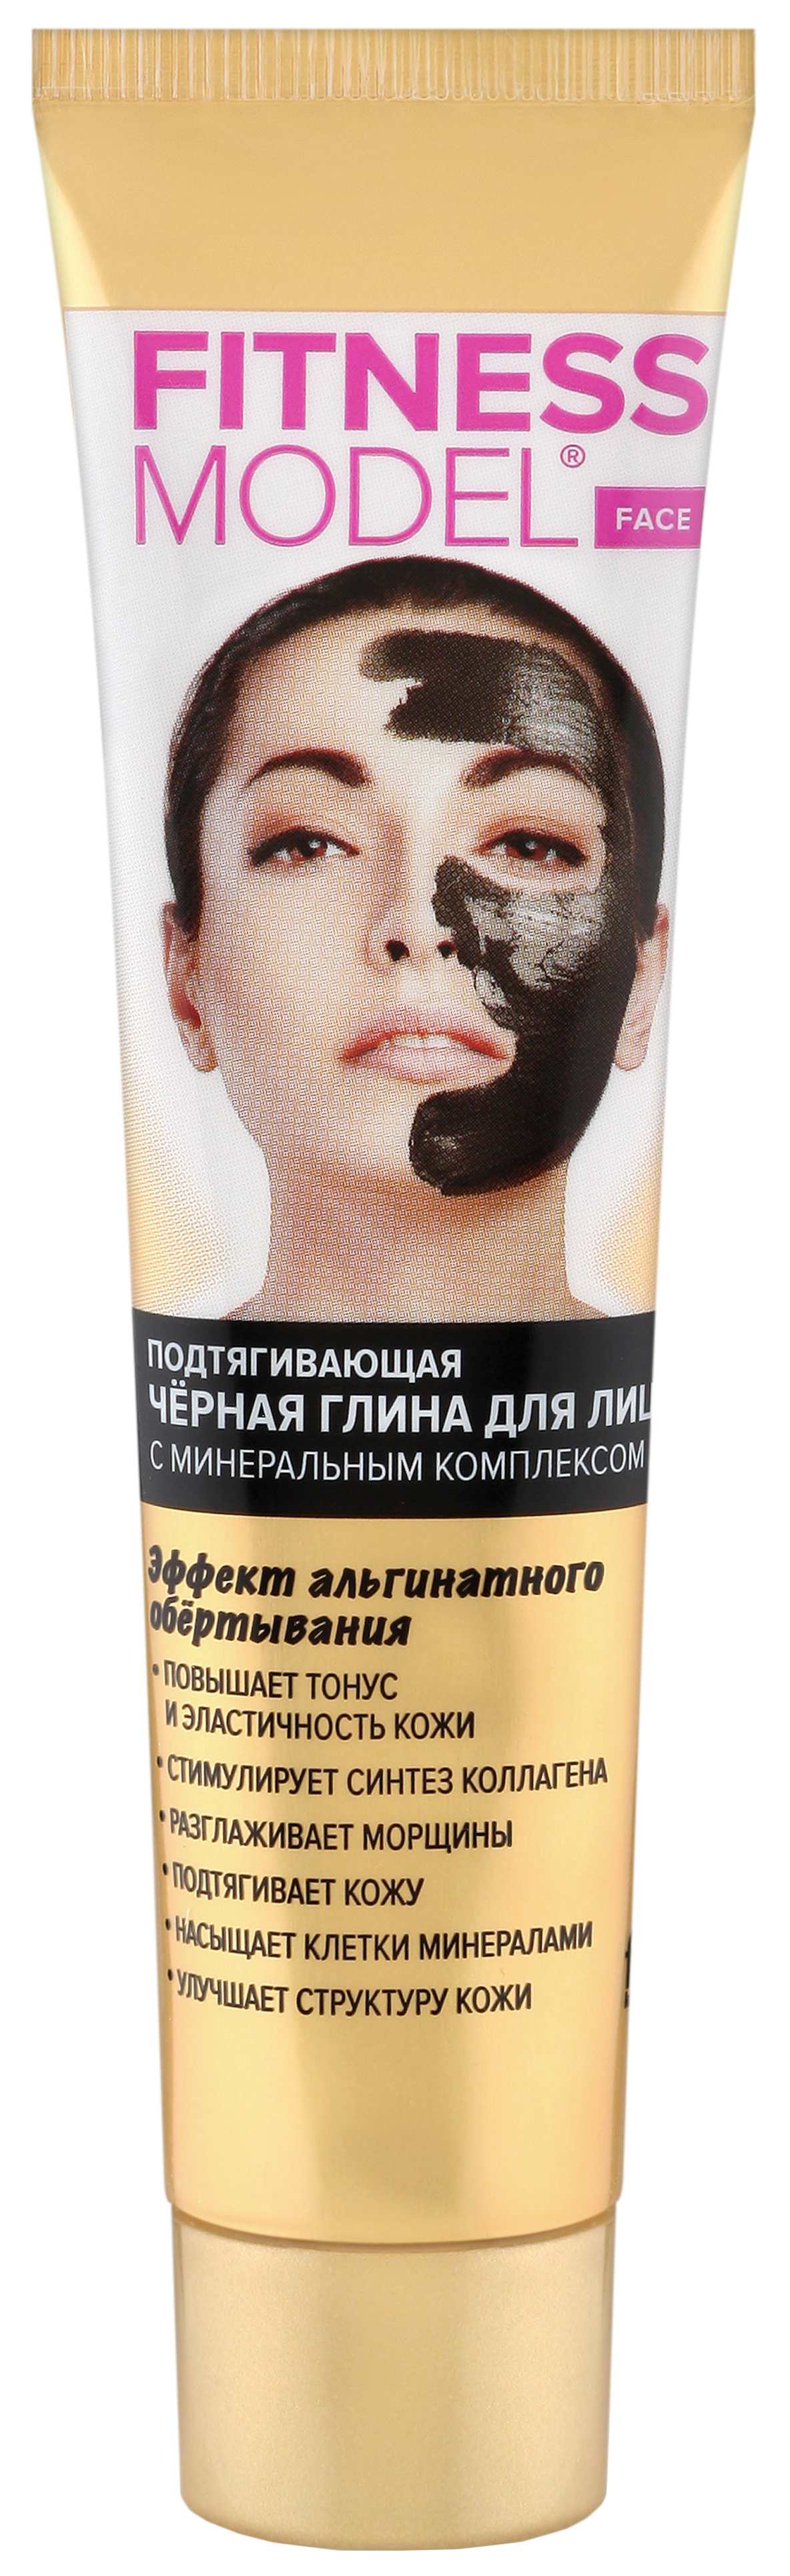 Маска для лица ФИТОкосметик FITNESS MODEL Черная глина 45 мл pl маска для лица многоразовая неопреновая черная со смайлом 1 шт